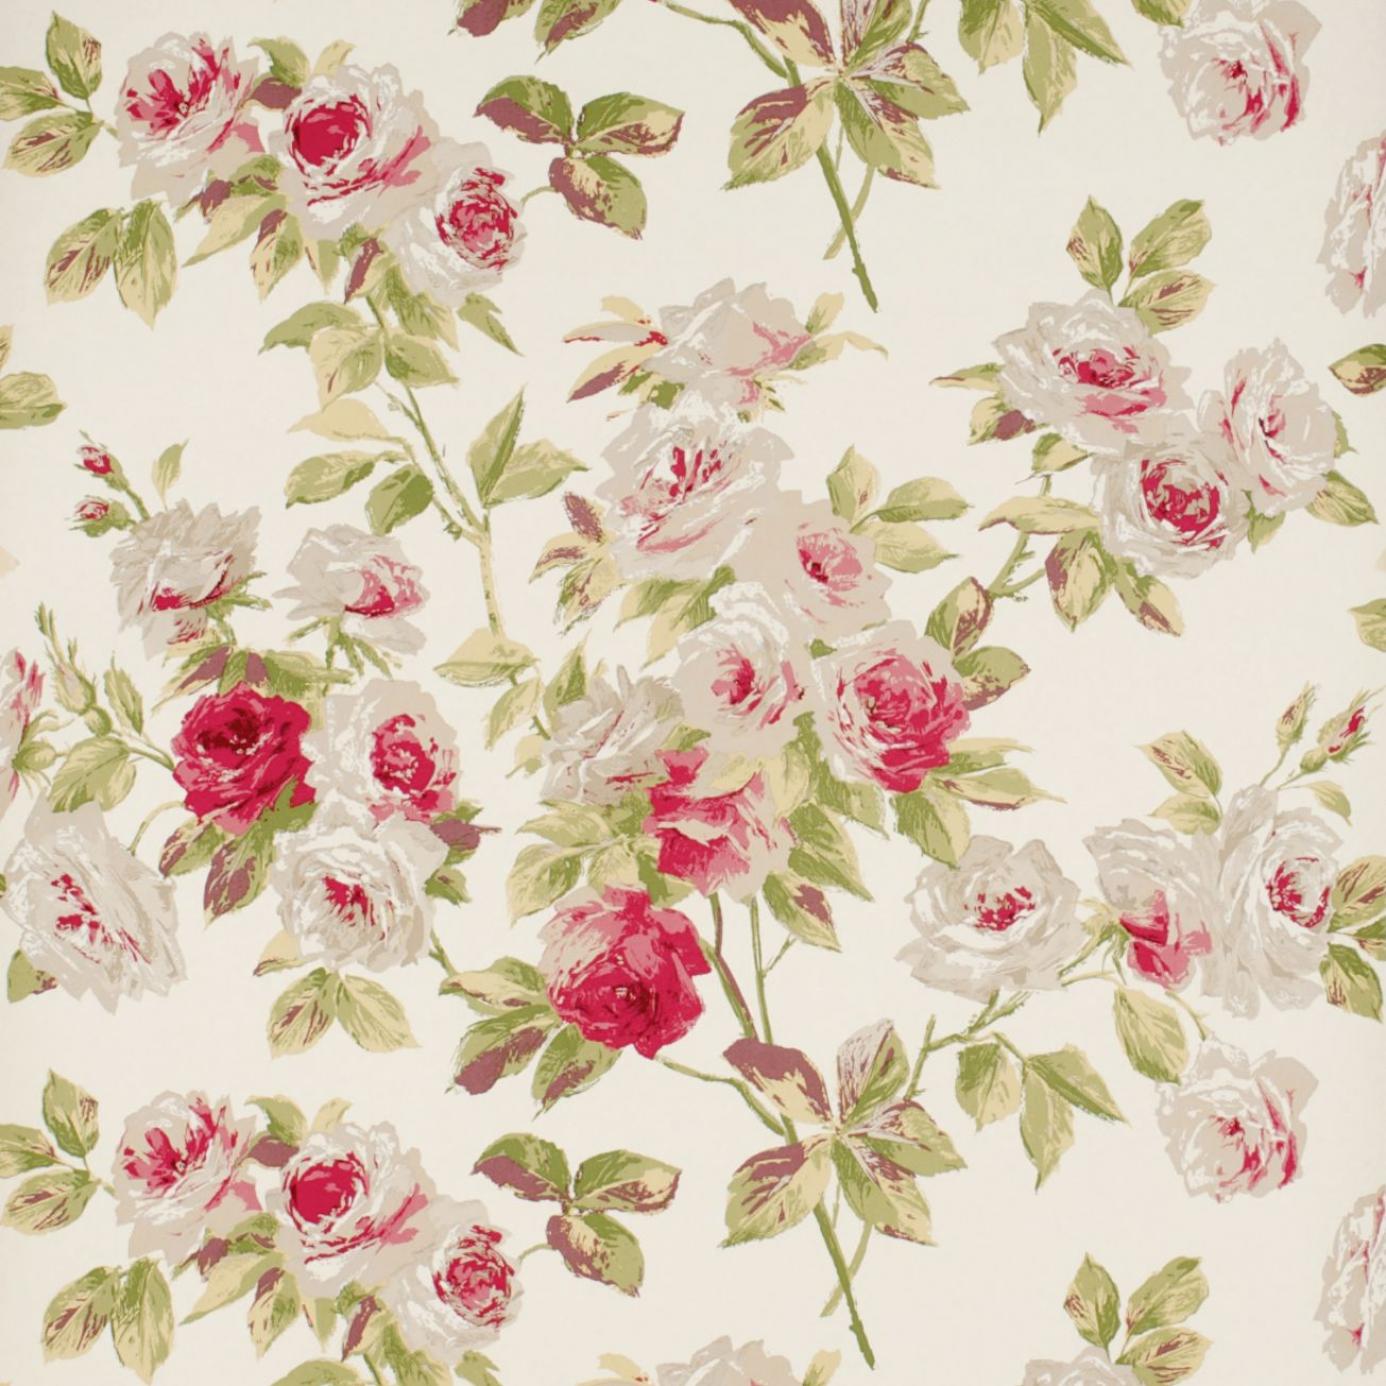 Download 15 Free Floral Vintage Backgrounds